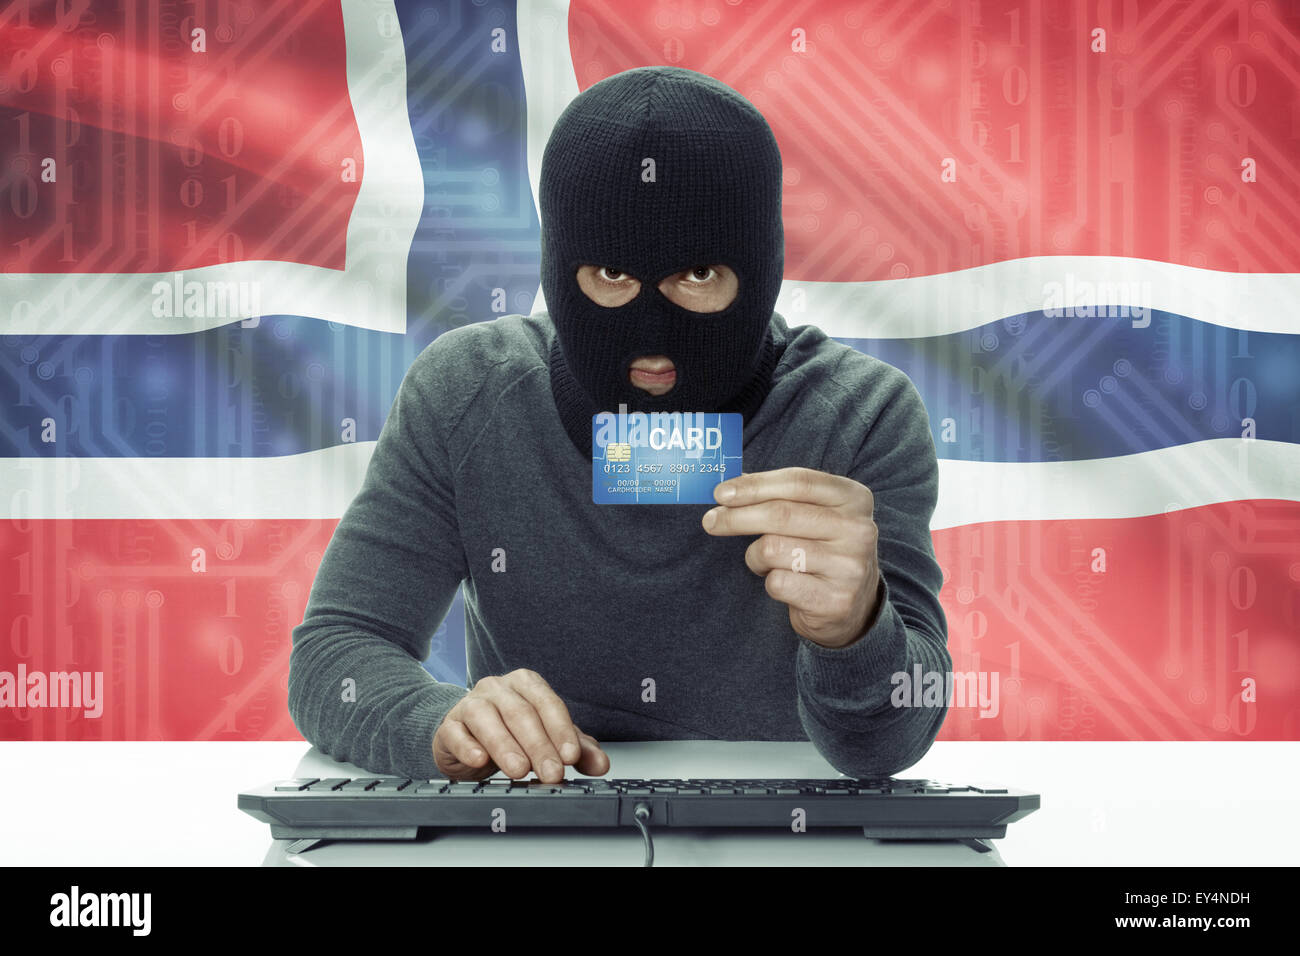 La peau sombre pirate avec carte de crédit et d'un drapeau sur fond - Norvège Banque D'Images